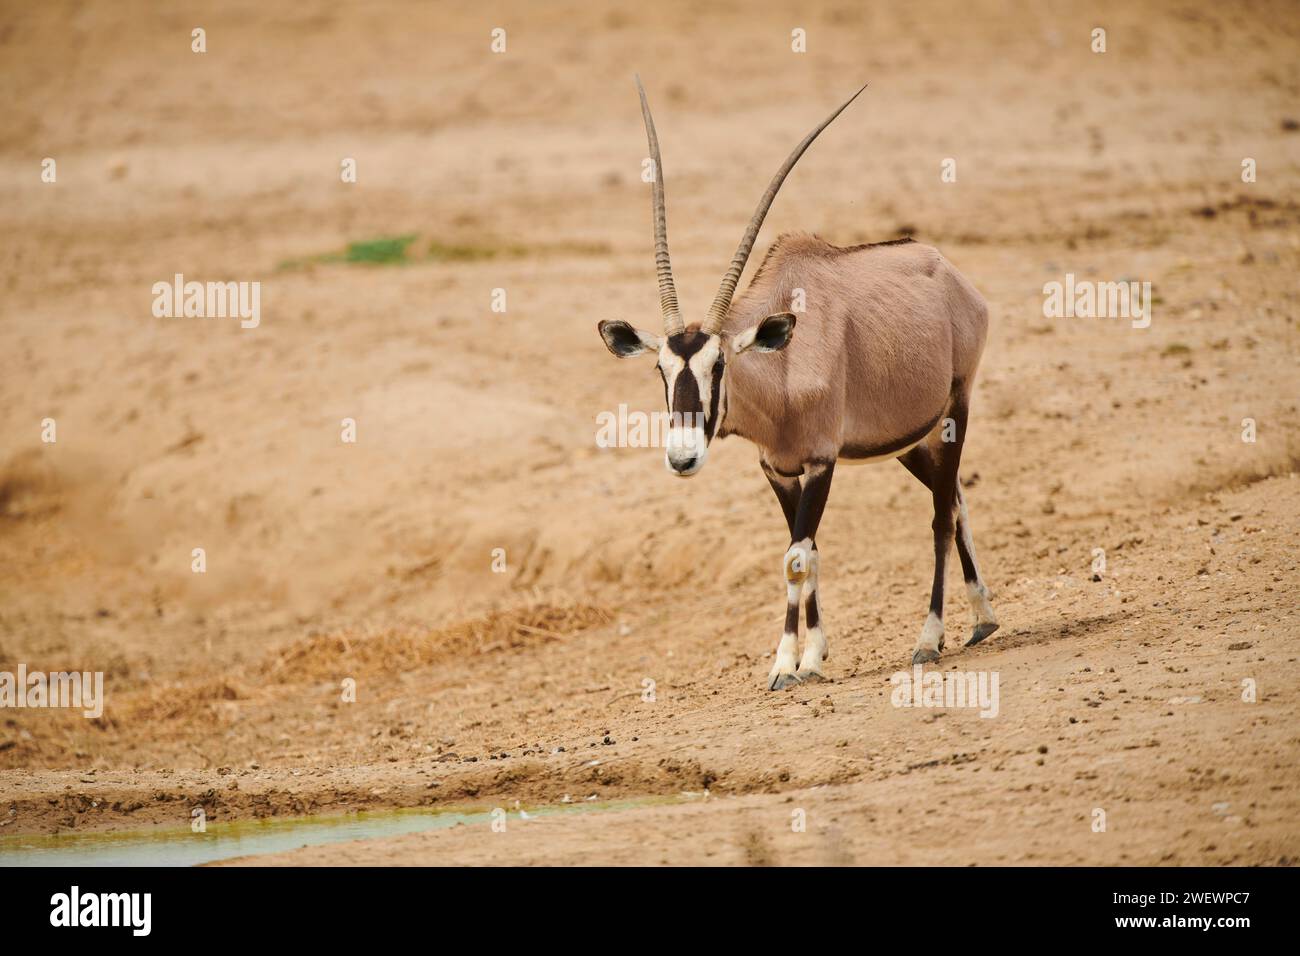 Oryx sud-africain (Oryx gazella) dans le dessert, captif, distribution Afrique Banque D'Images